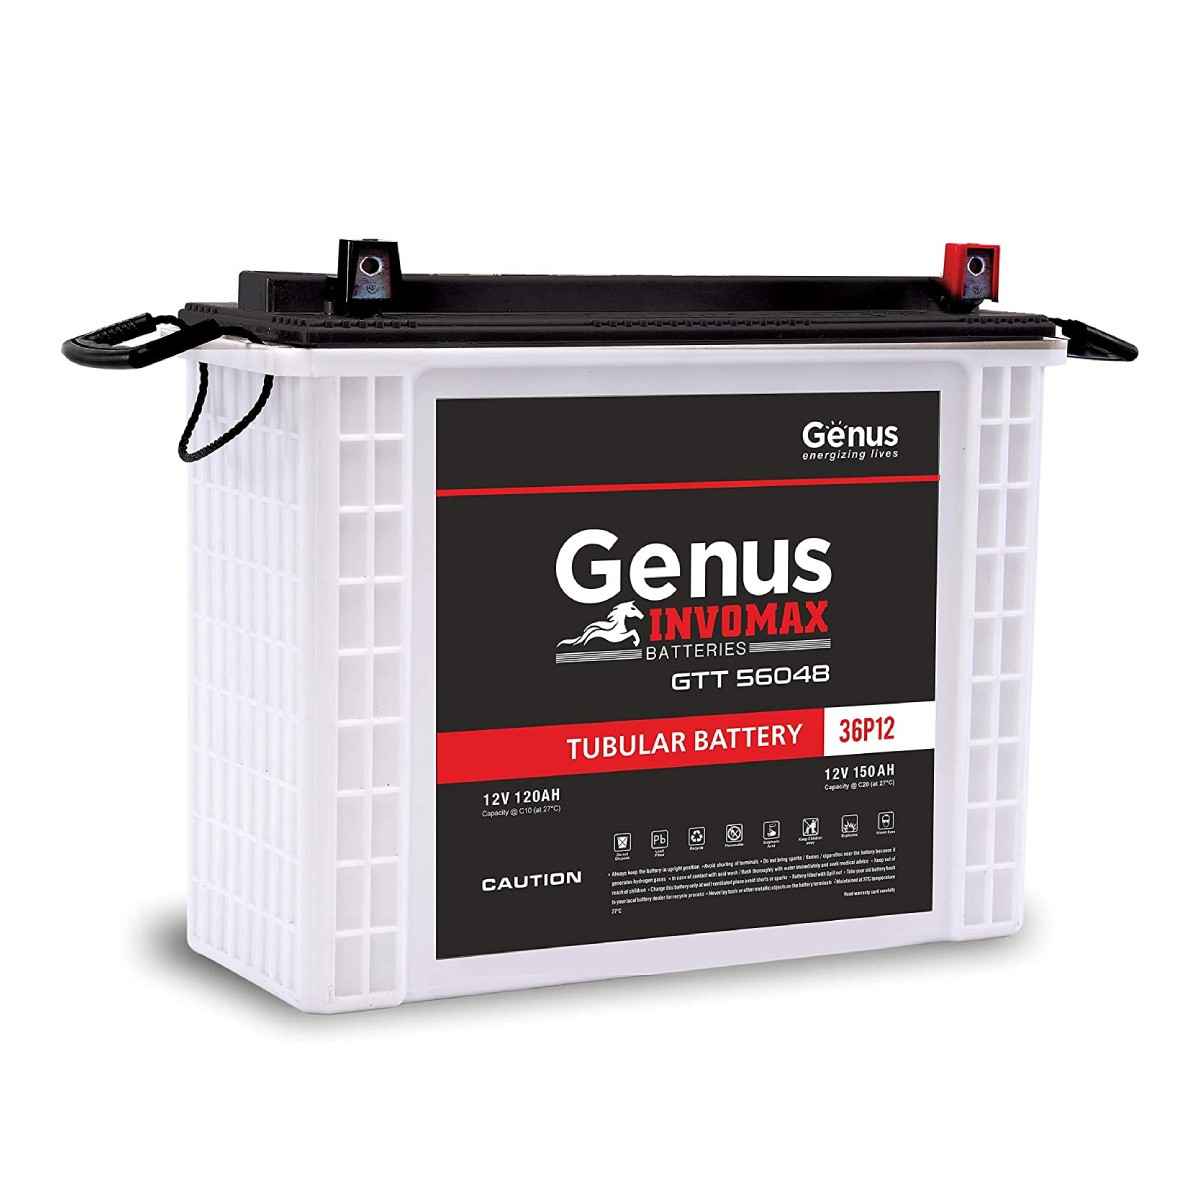 Genus Invomax GTT56048 PP 150 AH Inverter Battery